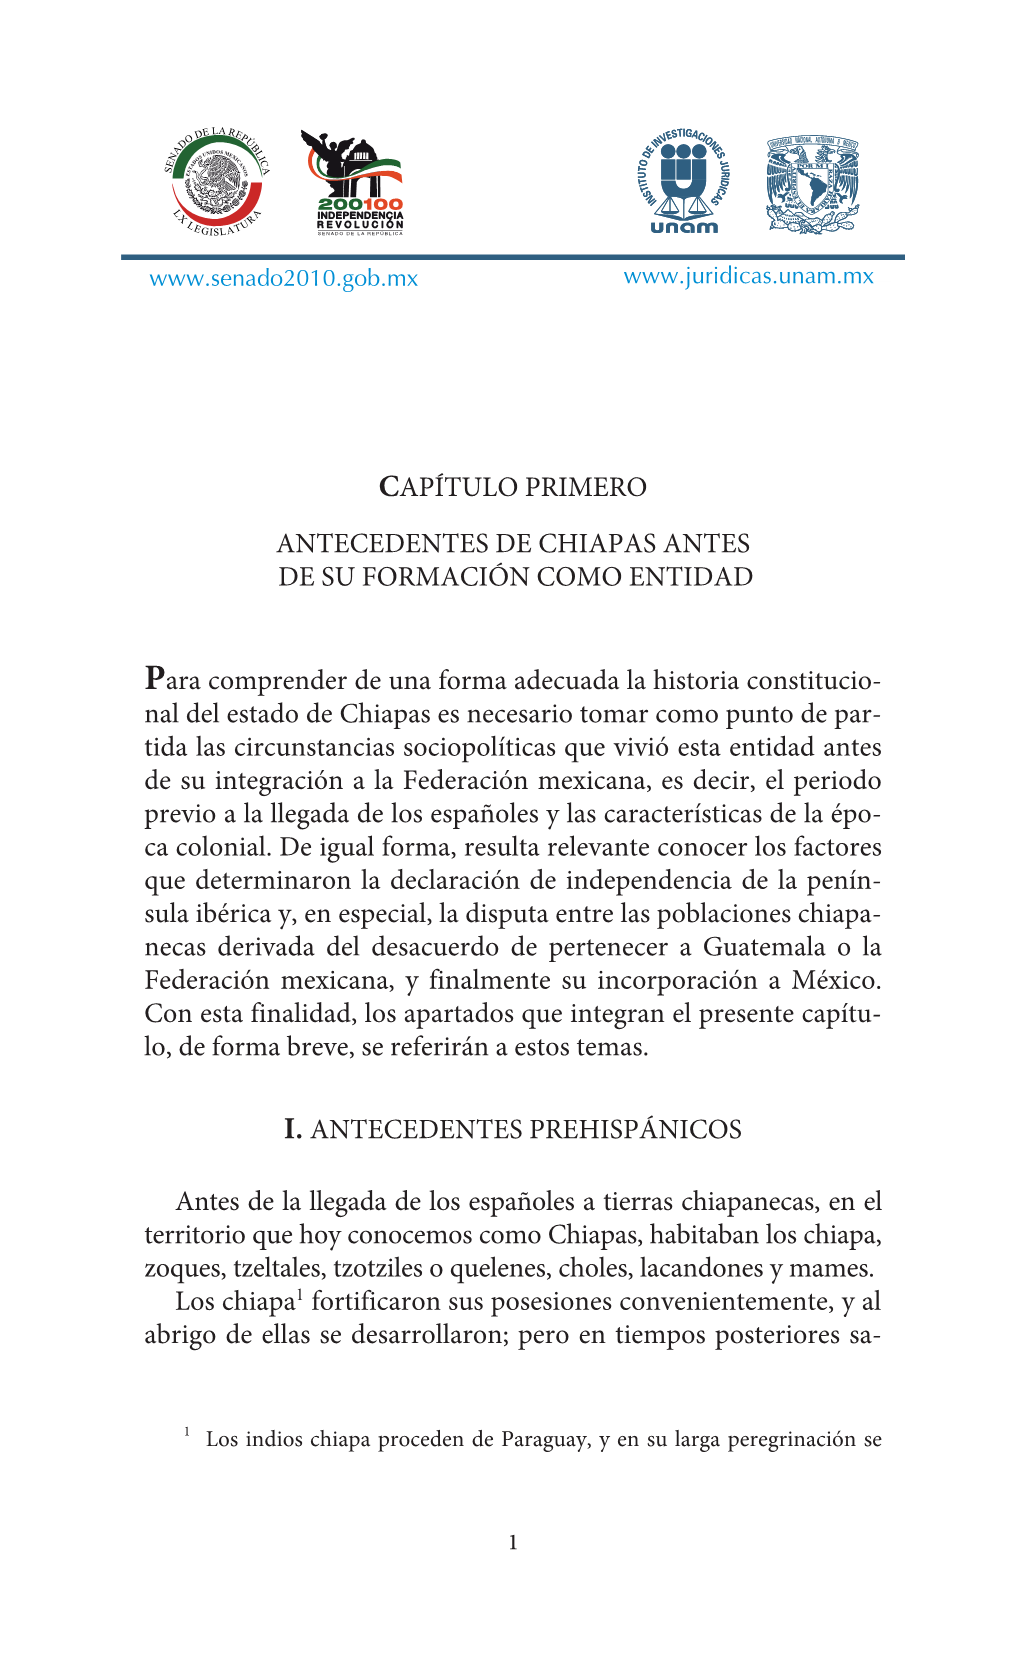 Capítulo Primero Antecedentes De Chiapas Antes De Su Formación Como Entidad